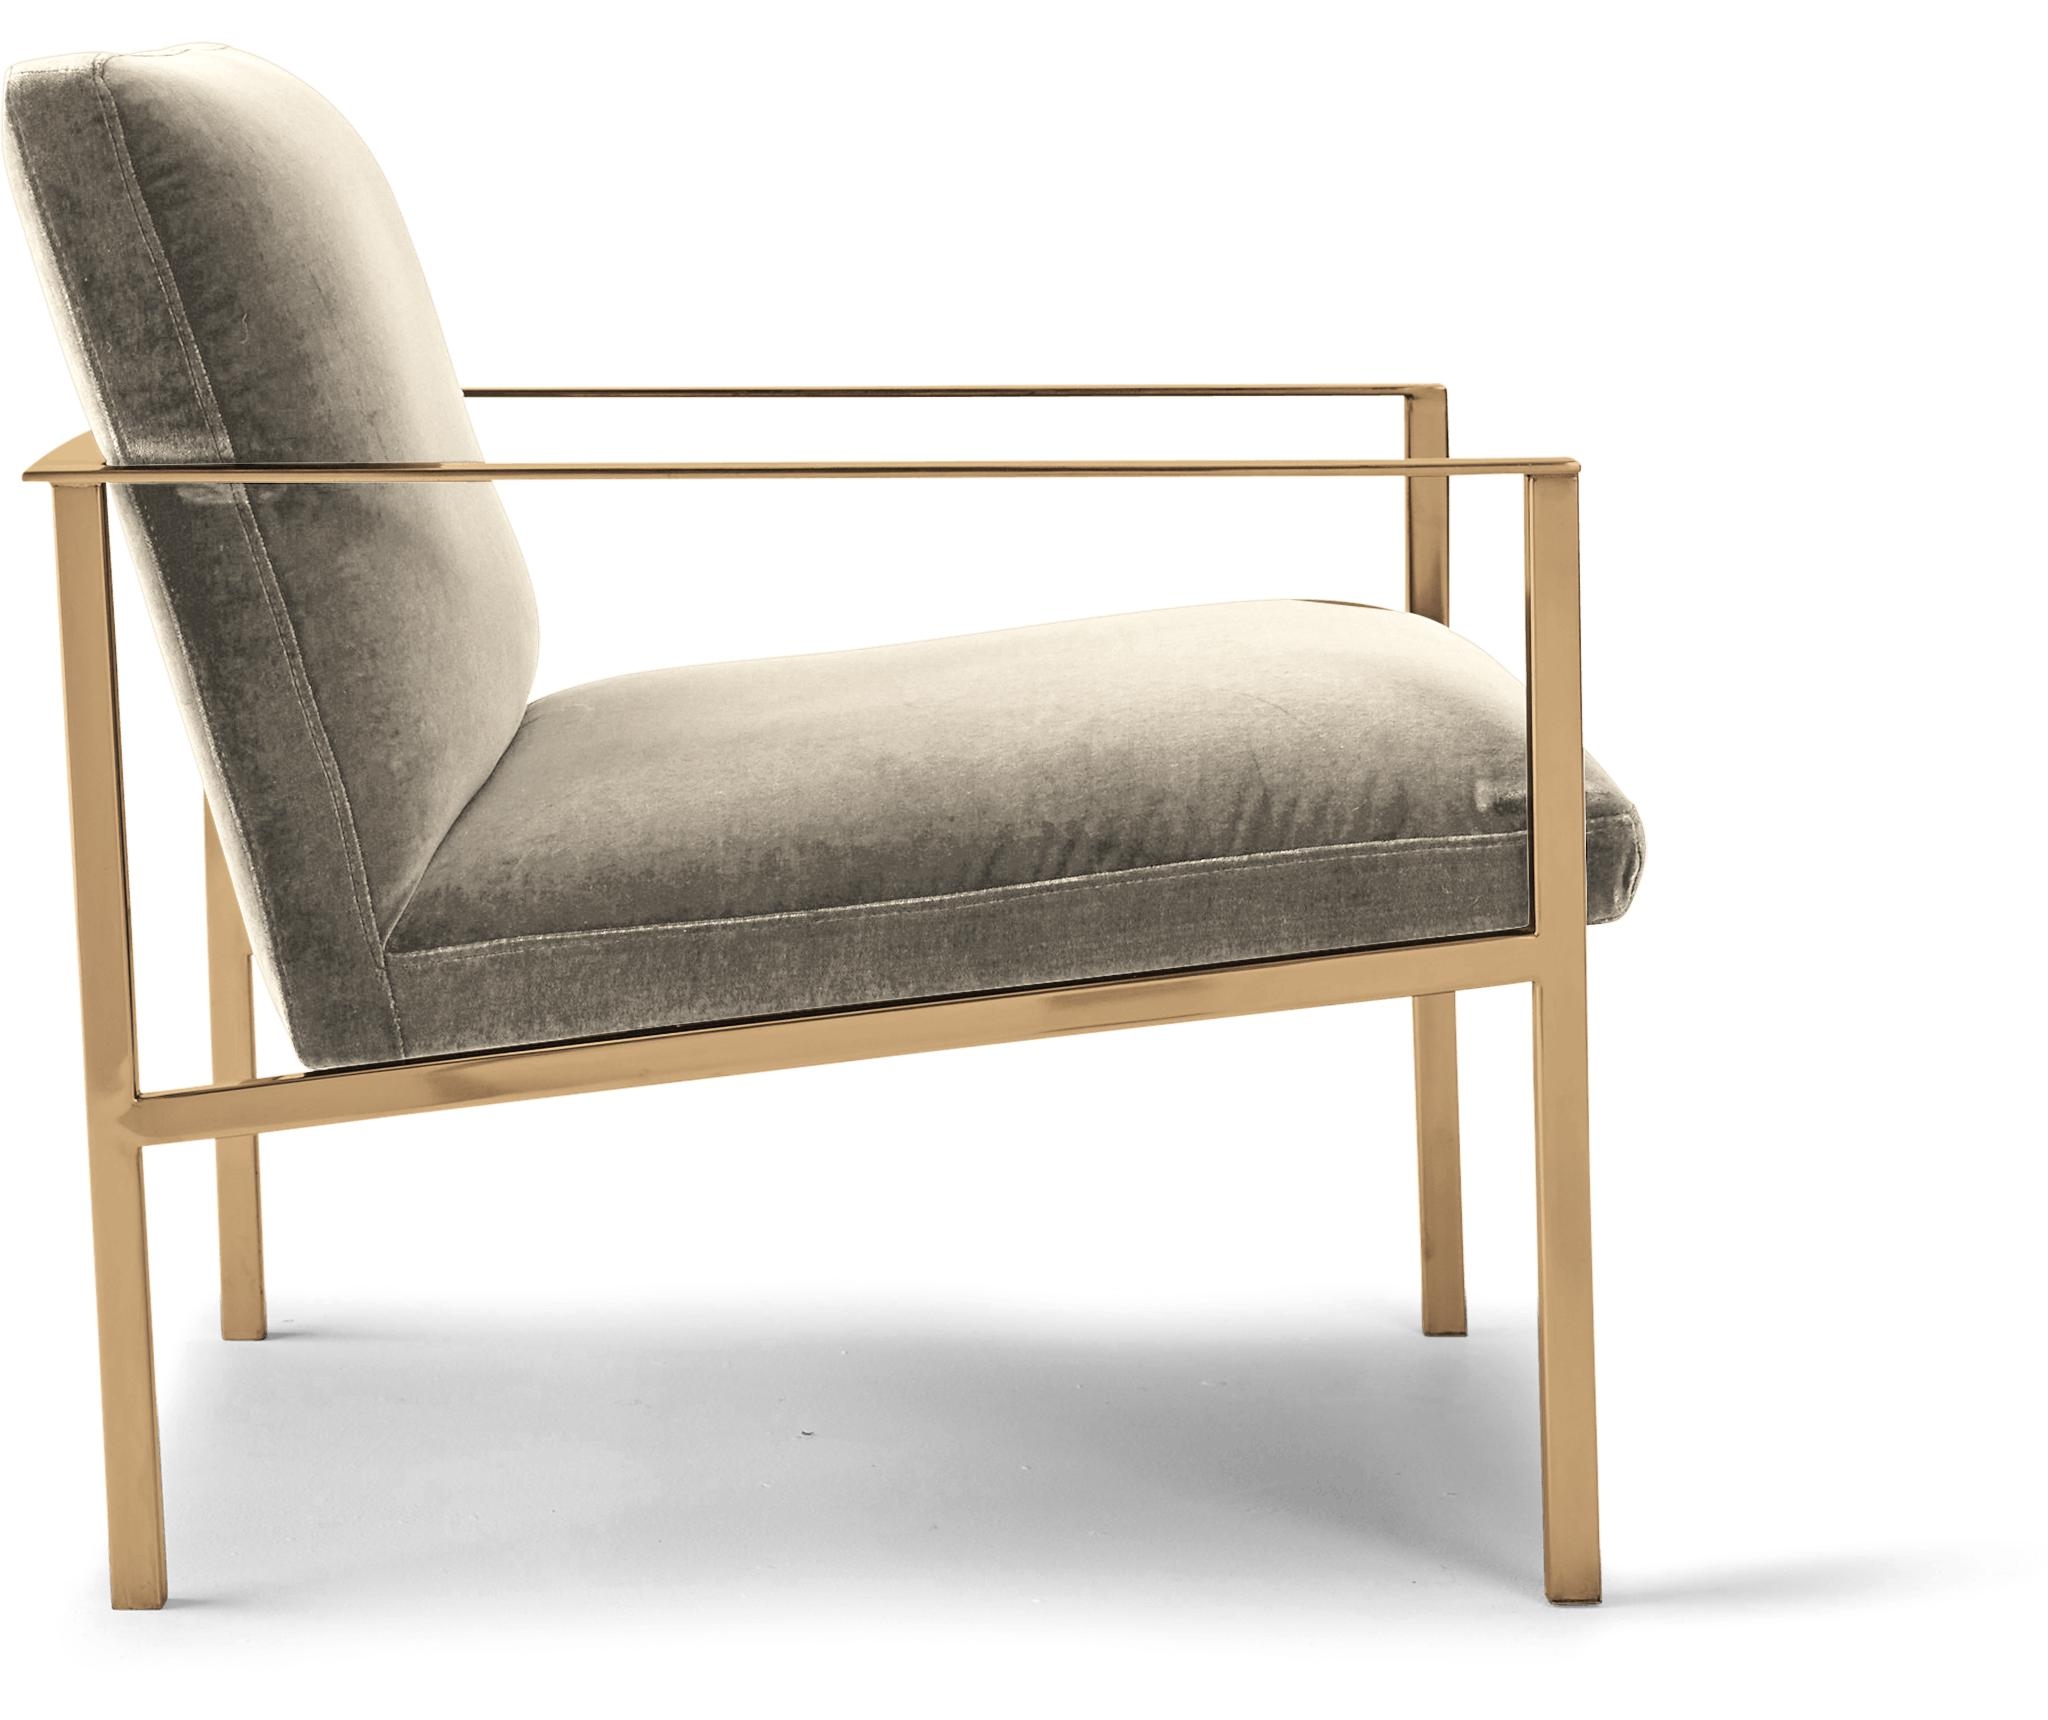 Beige/White Orla Mid Century Modern Accent Chair - Cody Sandstone - Image 2